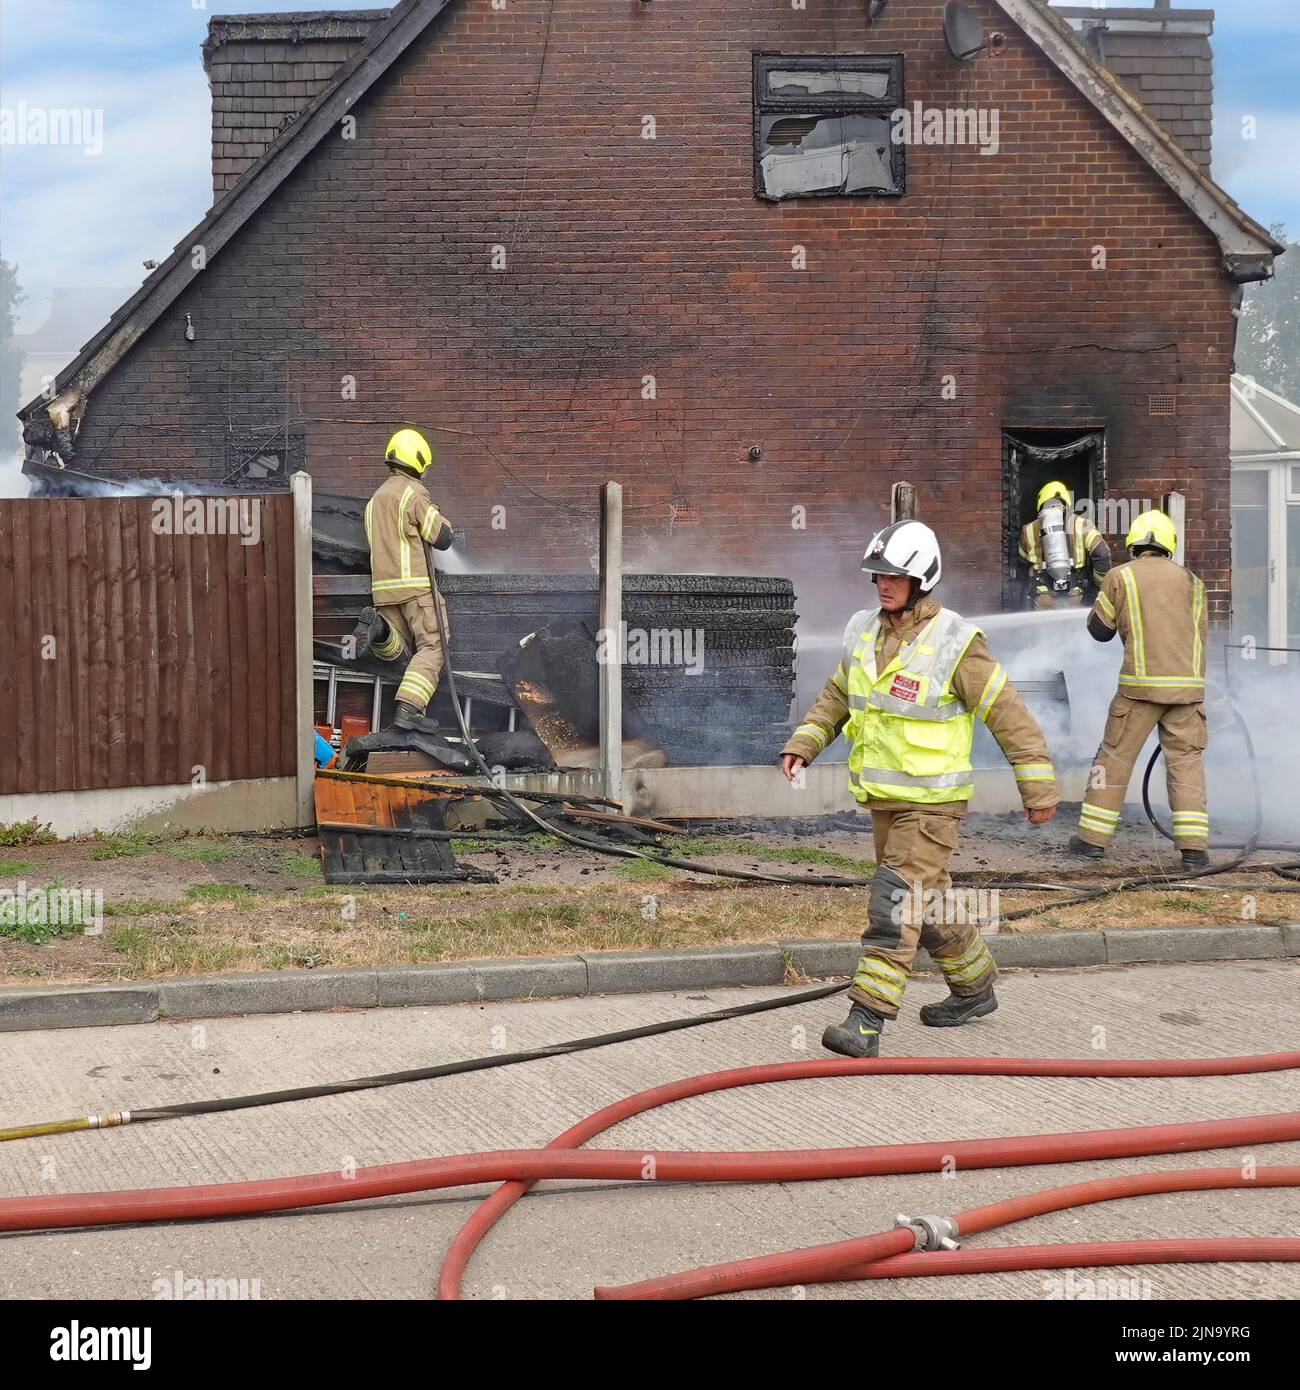 Essex Fire and Rescue Service Bomberos en ropa de protección Trabajo peligroso y peligroso en casa de fuego trabajando con el equipo de respiración Inglaterra Reino Unido Foto de stock